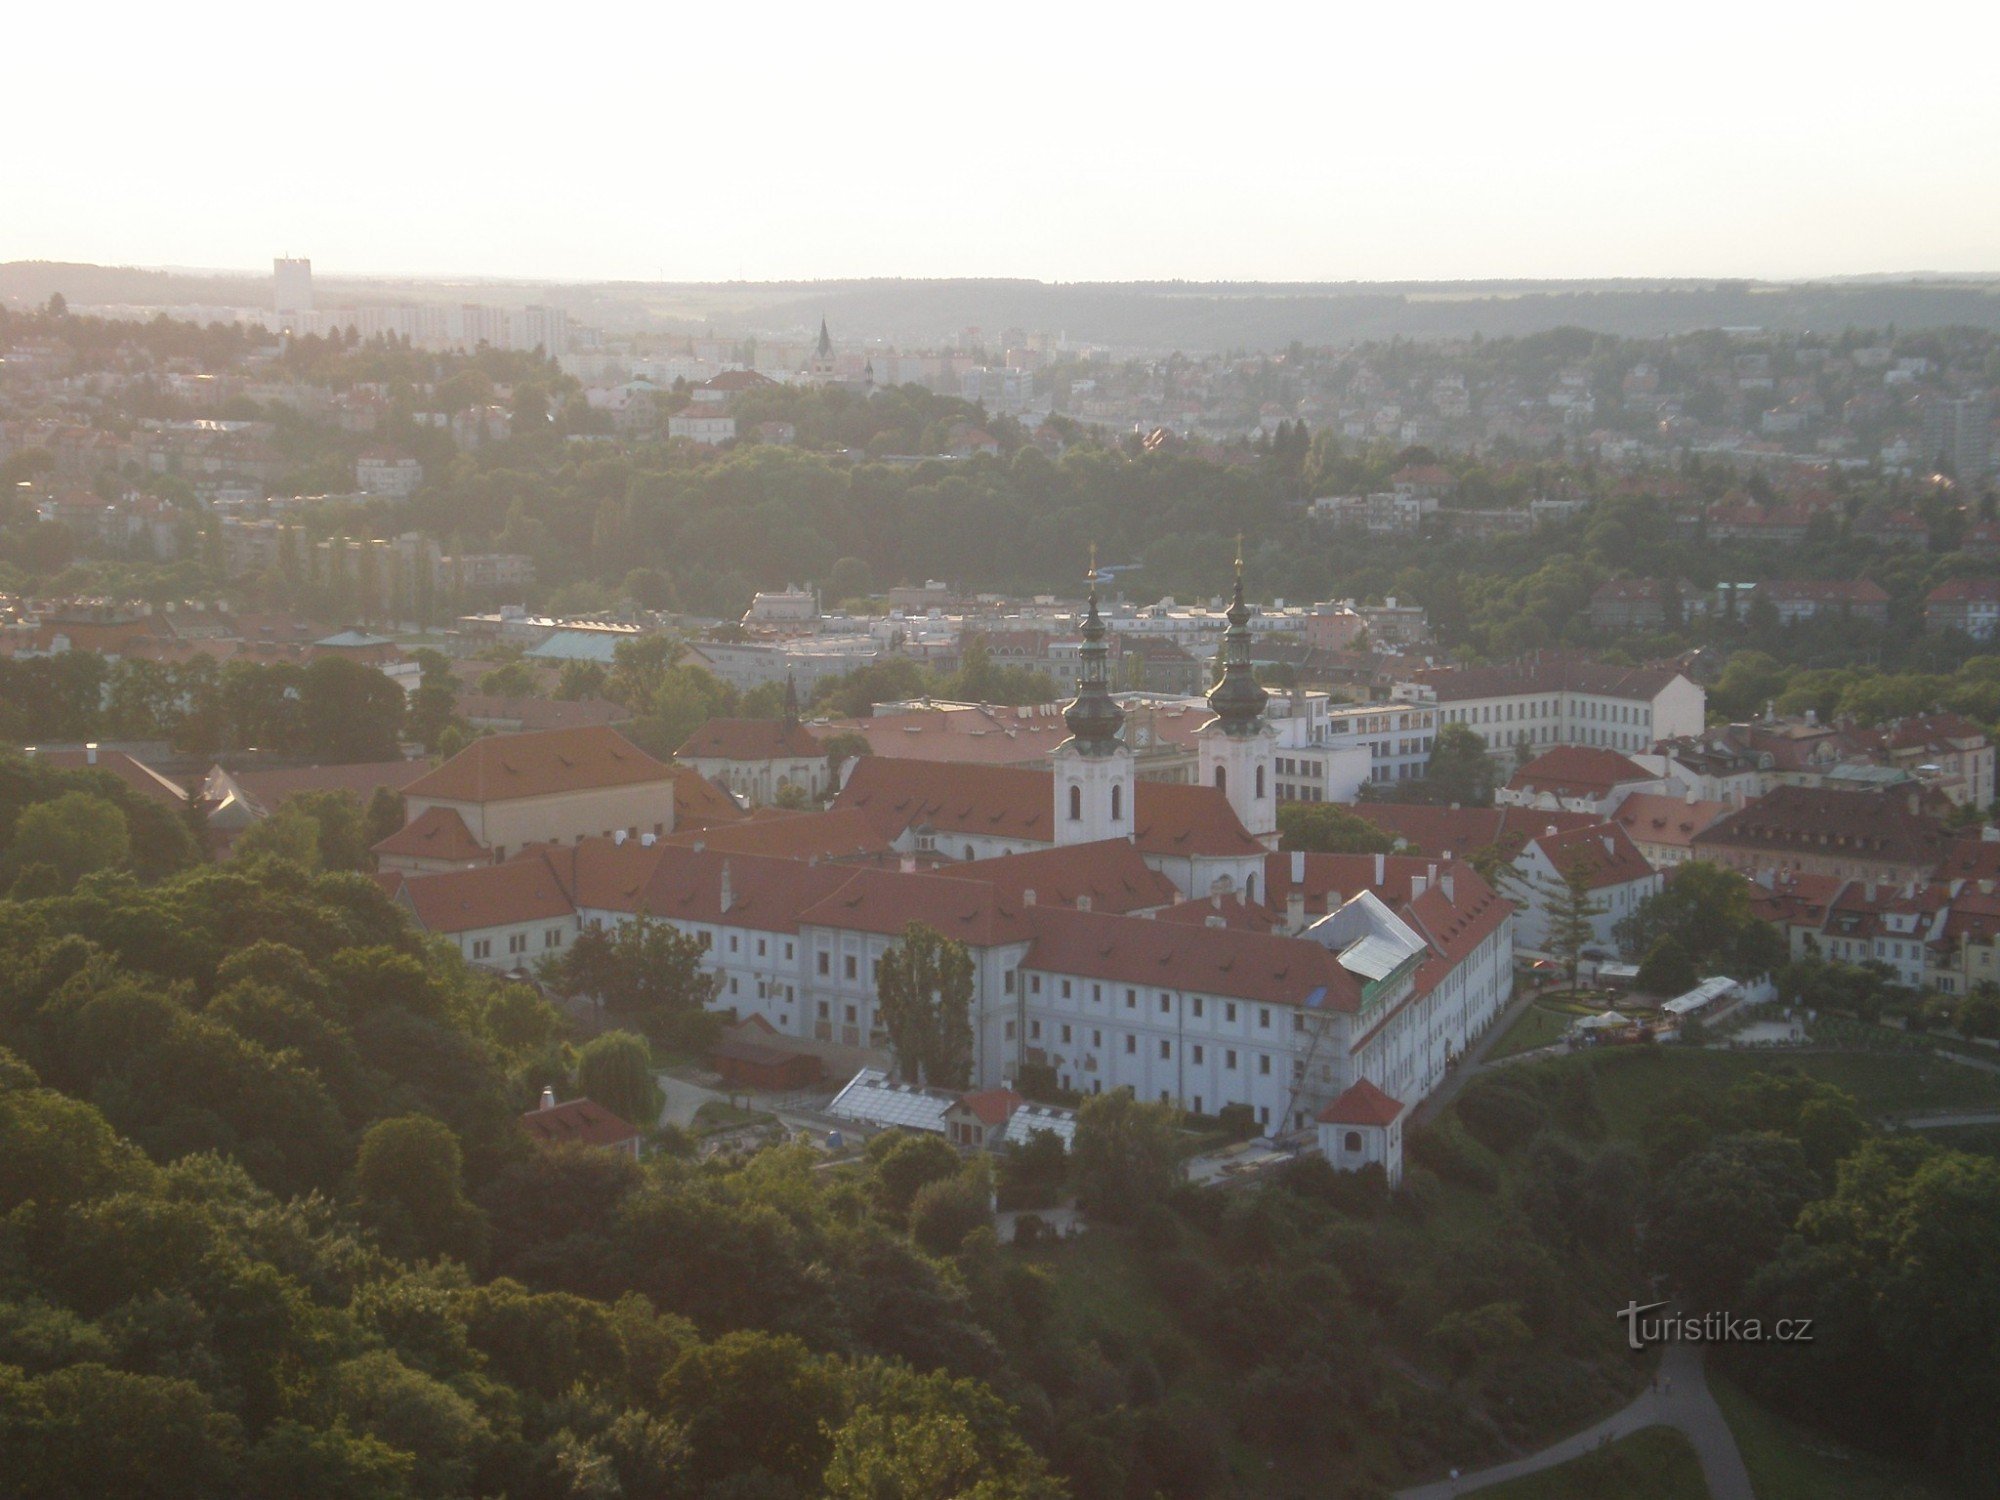 Widok na Klasztor Strahov z wieży widokowej Petřín